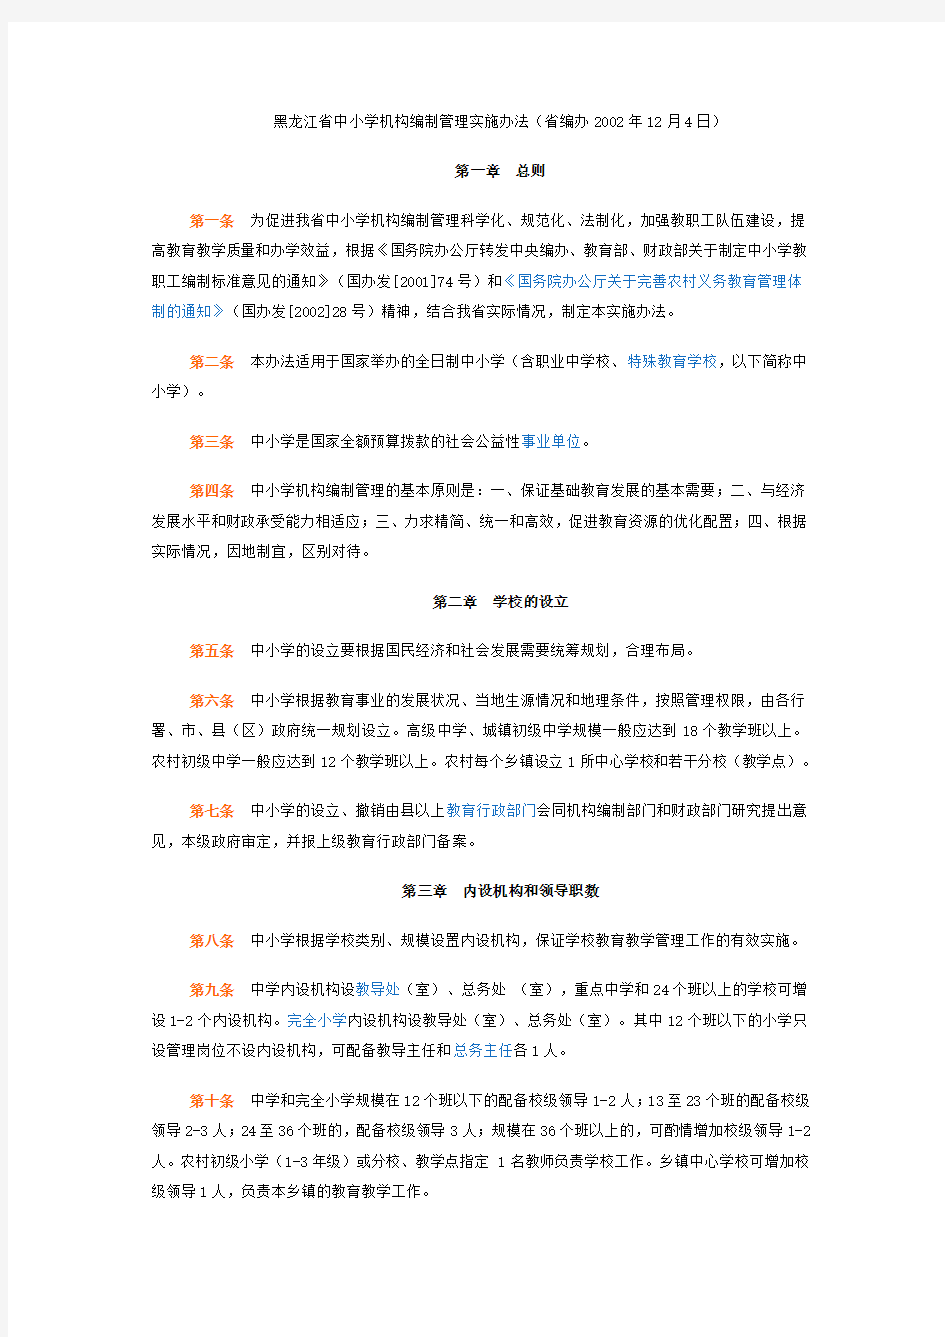 黑龙江省中小学机构编制管理实施办法